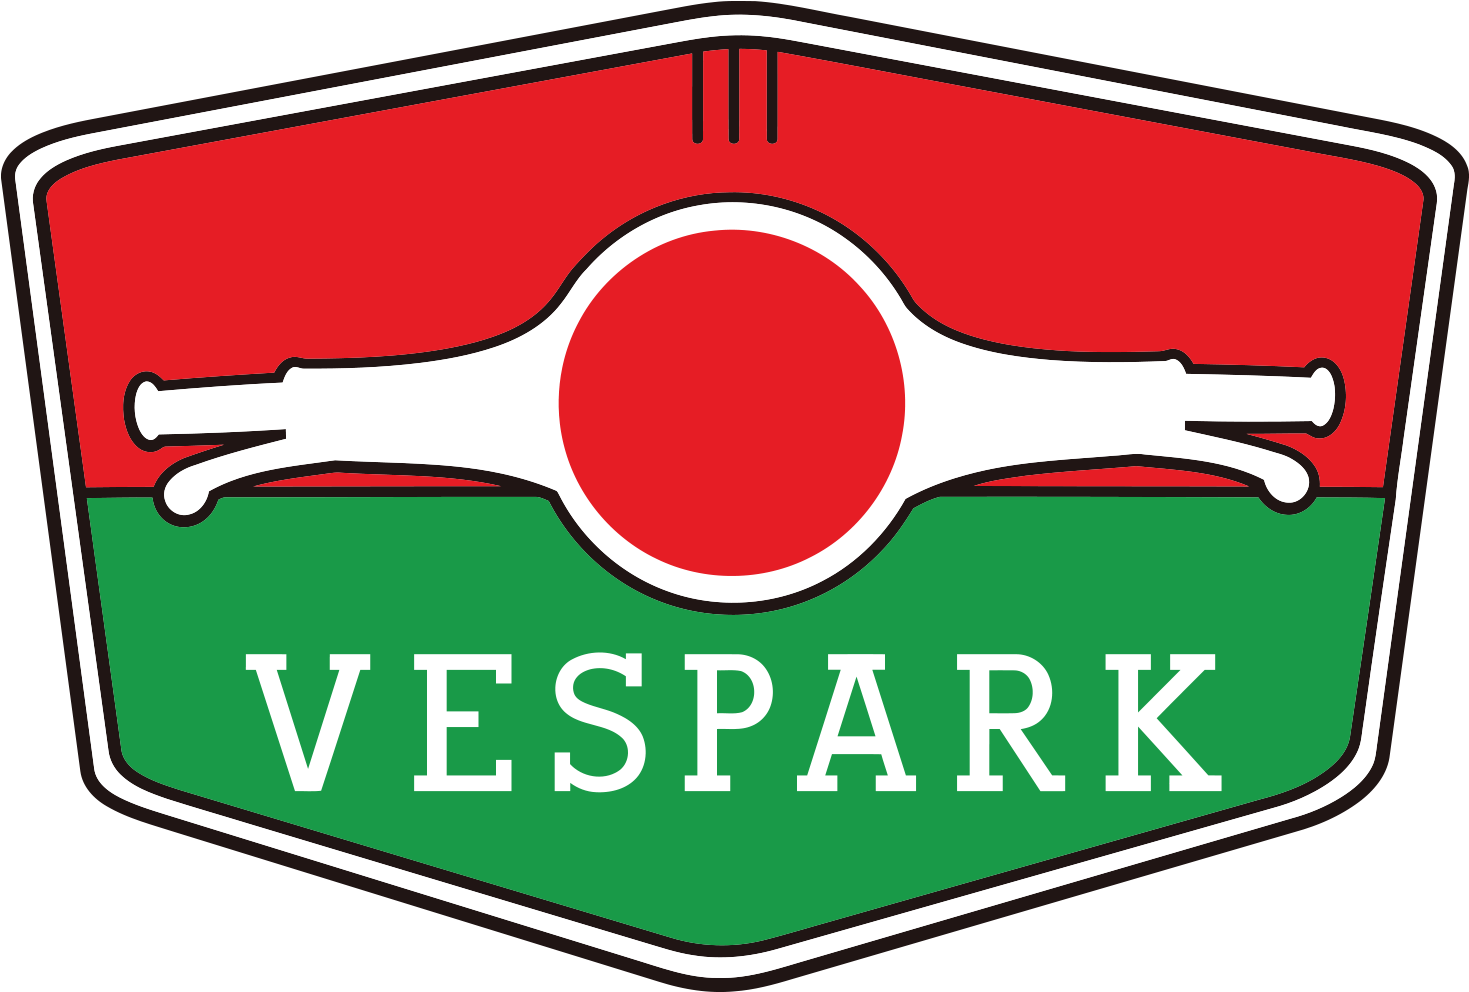 Vespa Medan Vespark - Vespa Clipart (1500x1023), Png Download